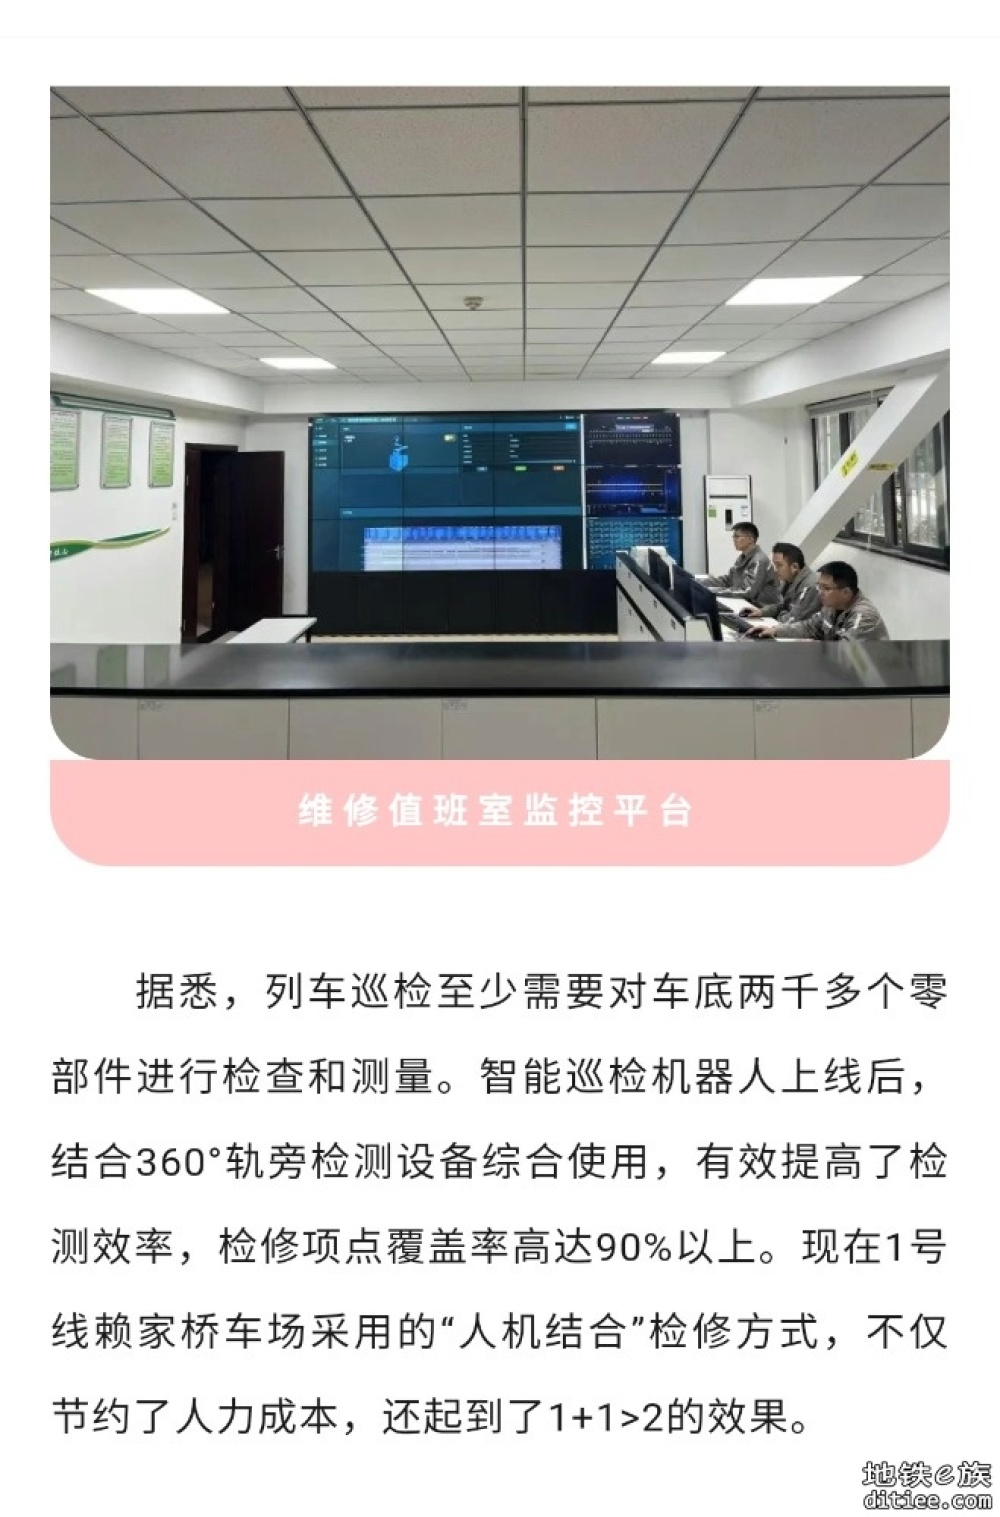 重庆轨道交通车辆智能巡检机器人上线